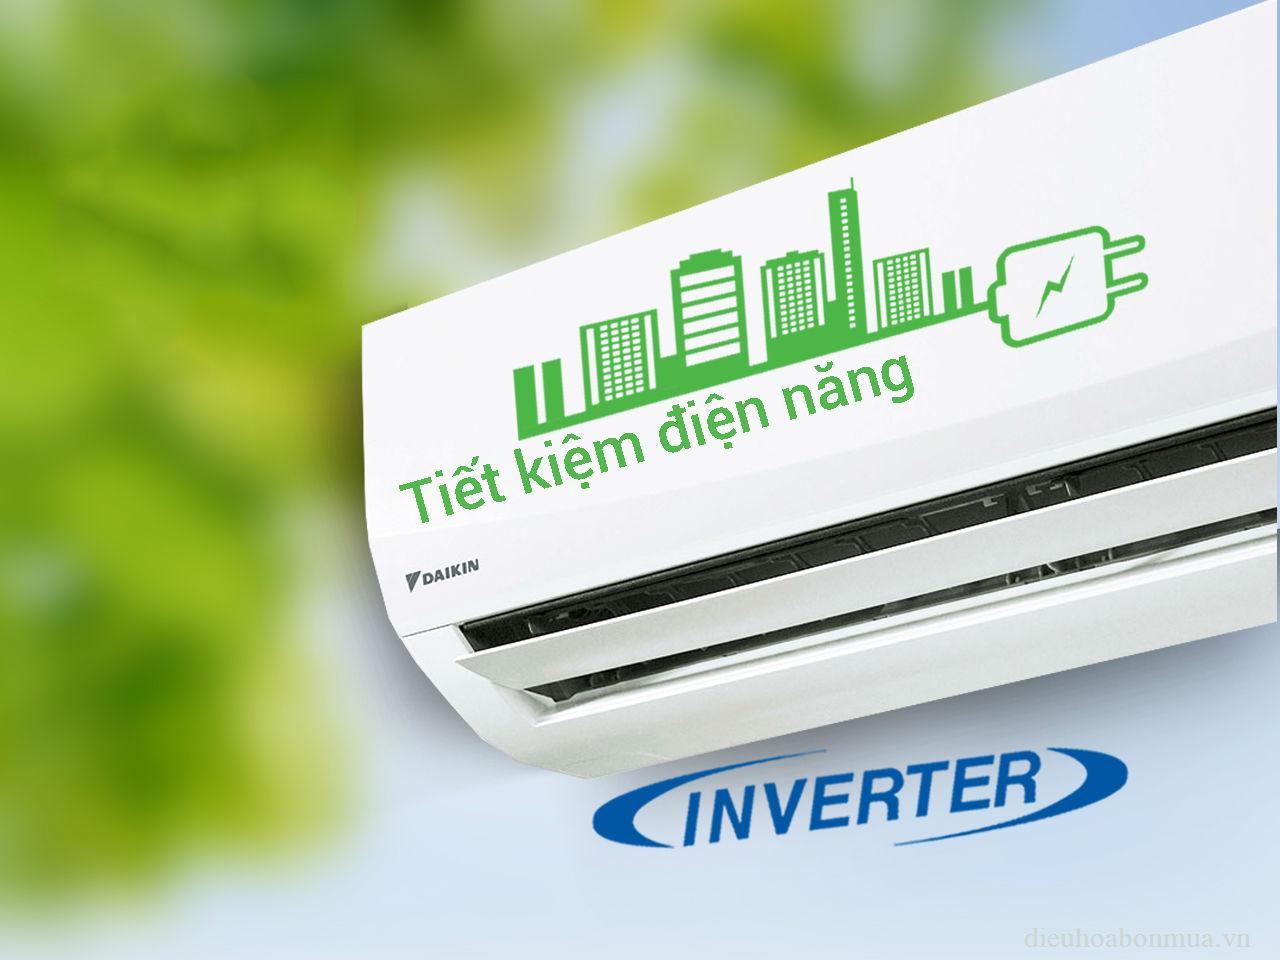 Máy lạnh Inverter sẽ giúp bạn tiết kiệm được nhiều điện năng hơn 